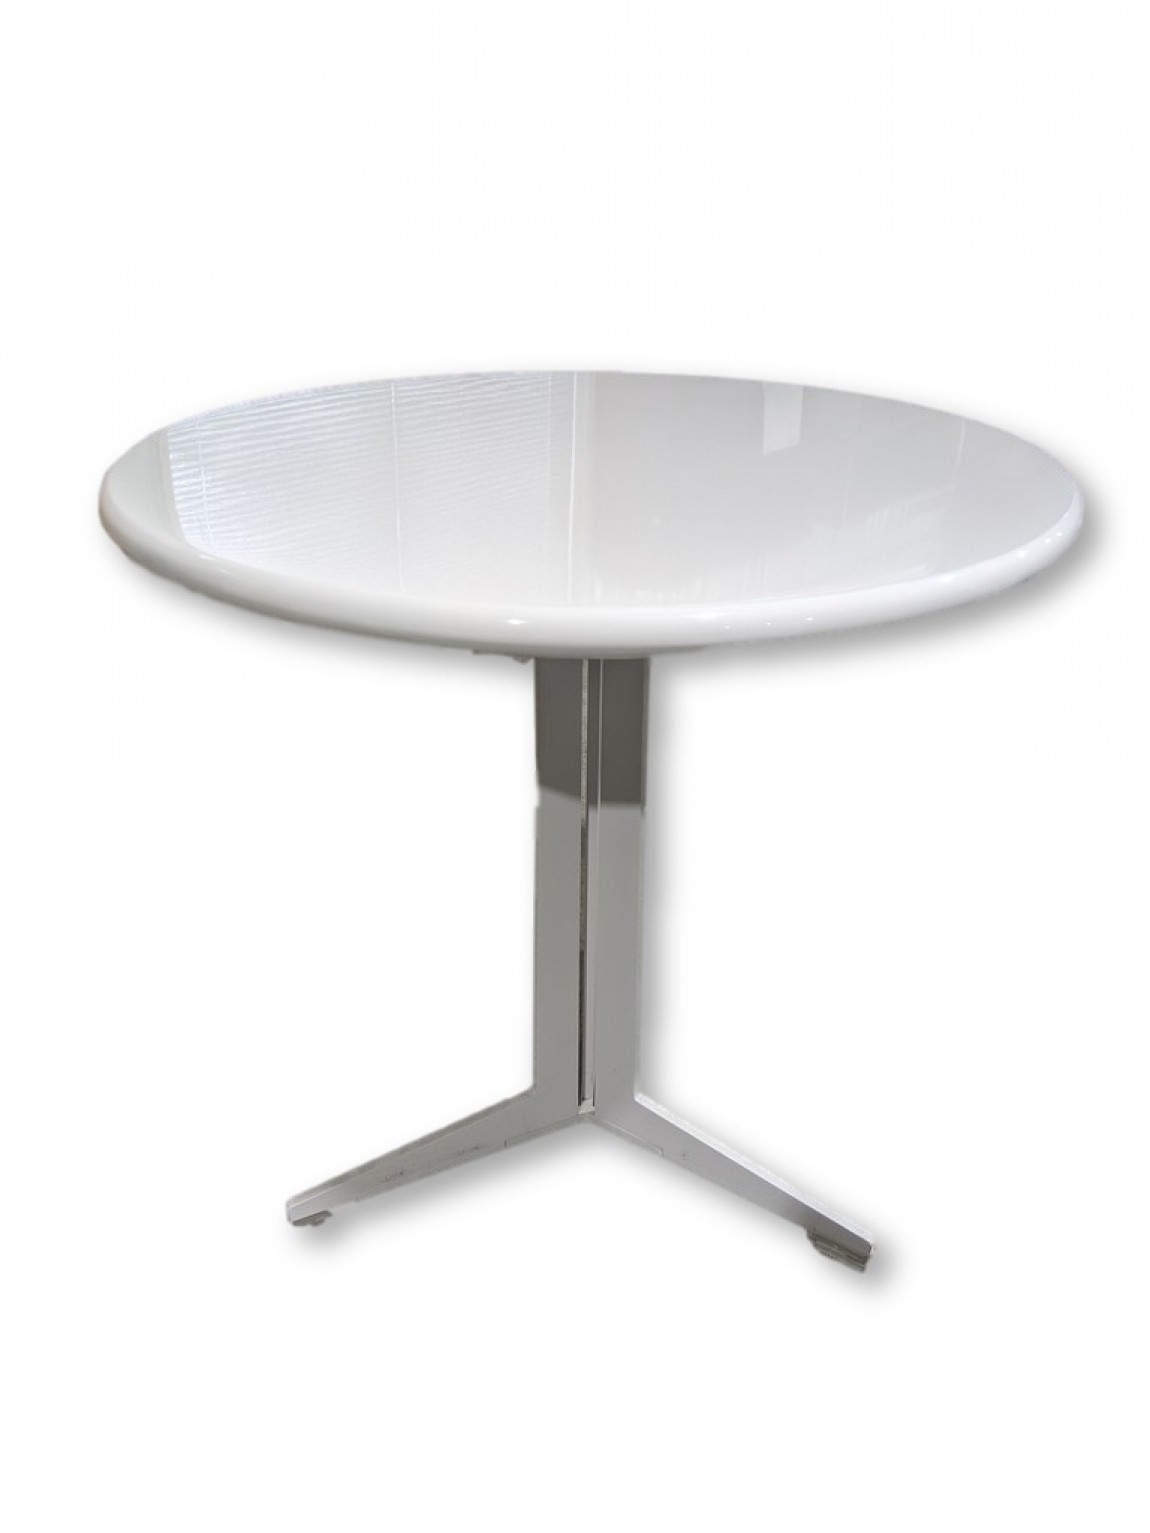 25.5 Round White Laminate Table